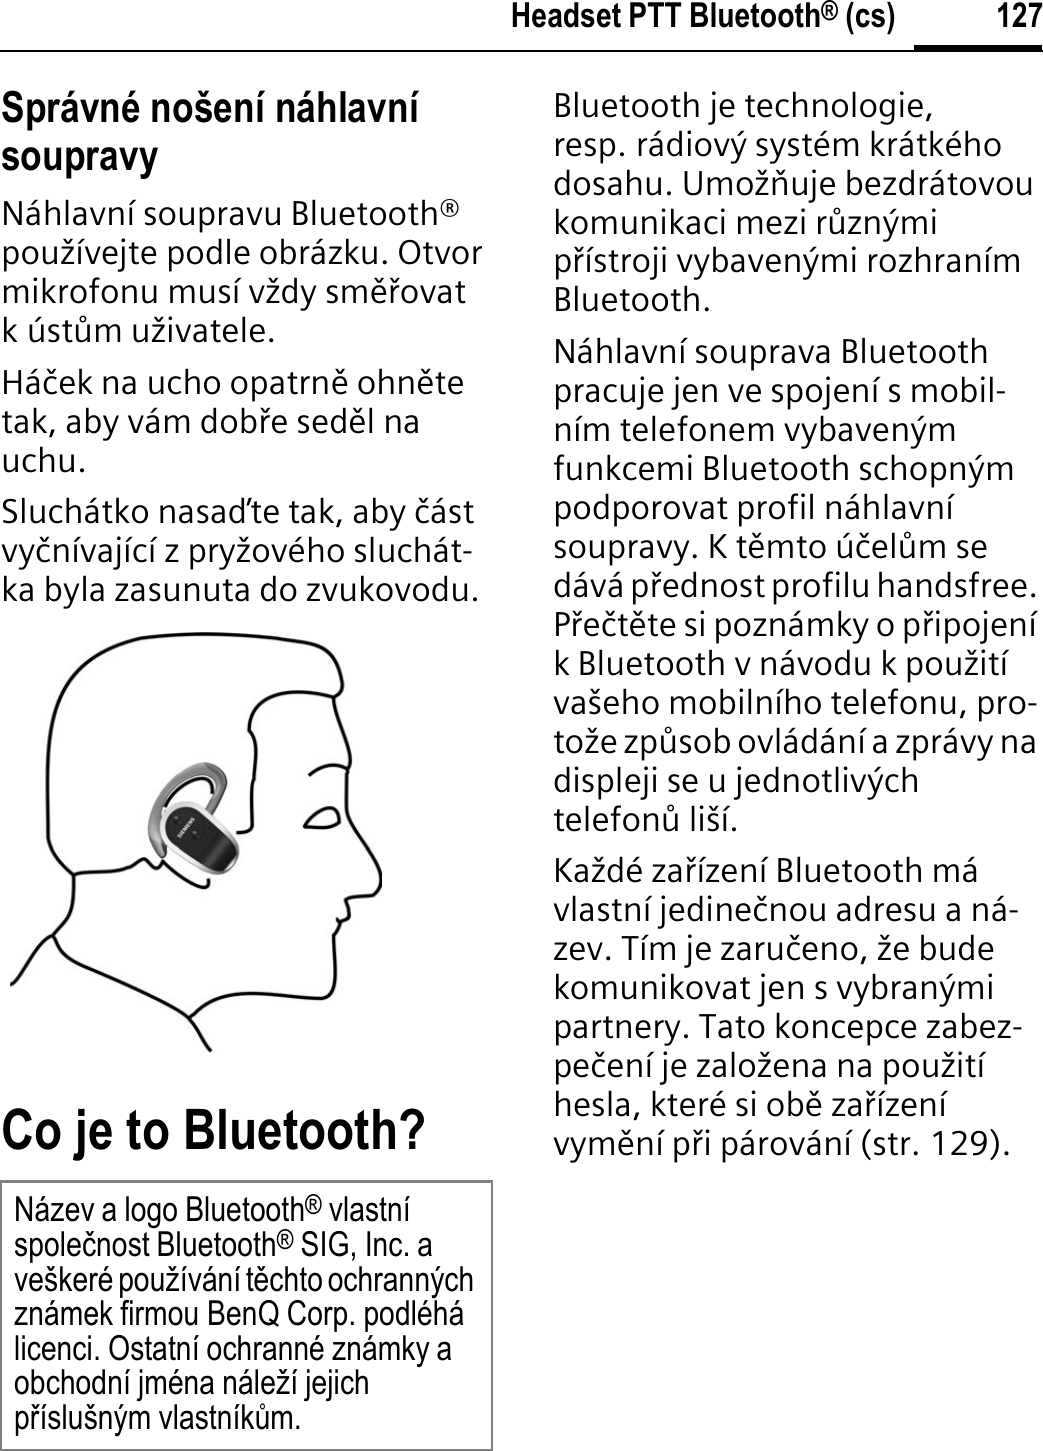 127Headset PTT Bluetooth® (cs)Správné nošení náhlavní soupravyNáhlavní soupravu Bluetooth® používejte podle obrázku. Otvor mikrofonu musí vždy smĊķovat kústňm uživatele.Háþek na ucho opatrnĊ ohnĊtetak, aby vám dobķe sedĊl na uchu.Sluchátko nasaĀte tak, aby þástvyþnívající z pryžového sluchát-ka byla zasunuta do zvukovodu.Co je to Bluetooth?Bluetooth je technologie, resp. rádiový systém krátkého dosahu. Umožĭuje bezdrátovou komunikaci mezi rňznými pķístroji vybavenými rozhraním Bluetooth.Náhlavní souprava Bluetooth pracuje jen ve spojení s mobil-ním telefonem vybaveným funkcemi Bluetooth schopným podporovat profil náhlavní soupravy. K tĊmto úþelňm se dává pķednost profilu handsfree. PķeþtĊte si poznámky o pķipojení k Bluetooth v návodu k použití vašeho mobilního telefonu, pro-tože zpňsob ovládání a zprávy na displeji se u jednotlivých telefonň liší.Každé zaķízení Bluetooth má vlastní jedineþnou adresu a ná-zev. Tím je zaruþeno, že bude komunikovat jen s vybranými partnery. Tato koncepce zabez-peþení je založena na použití hesla, které si obĊ zaķízení vymĊní pķi párování (str. 129).Název a logo Bluetooth® vlastní spoleþnost Bluetooth® SIG, Inc. a veškeré používání tČchto ochranných známek firmou BenQ Corp. podléhá licenci. Ostatní ochranné známky a obchodní jména náleží jejich pĜíslušným vlastníkĤm.